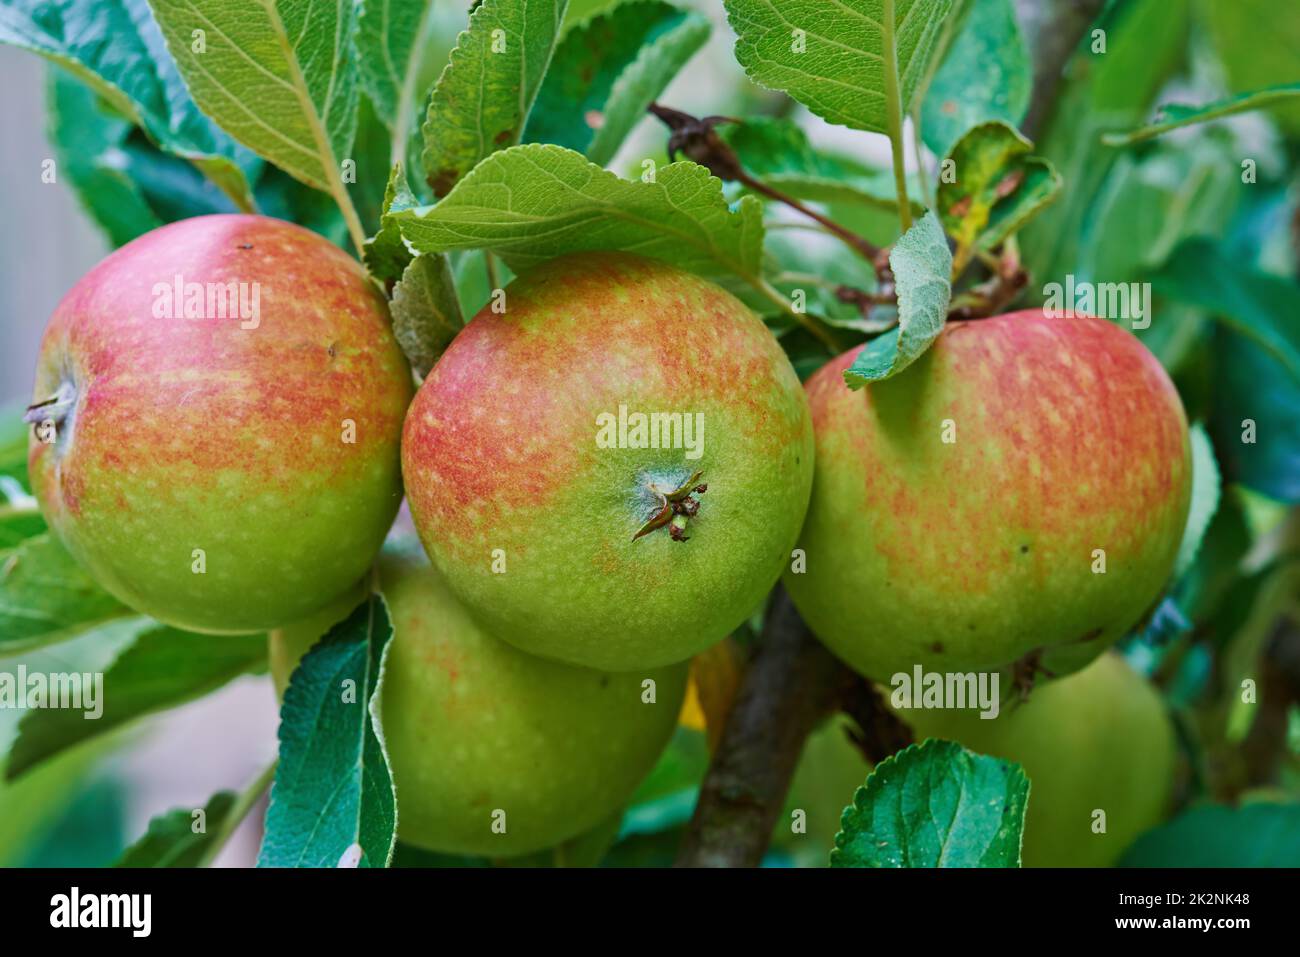 Greifen Sie heraus und erleben Sie die Güte der Natur. Reife rote Äpfel auf einem Apfelbaum in einem Obstgarten. Stockfoto